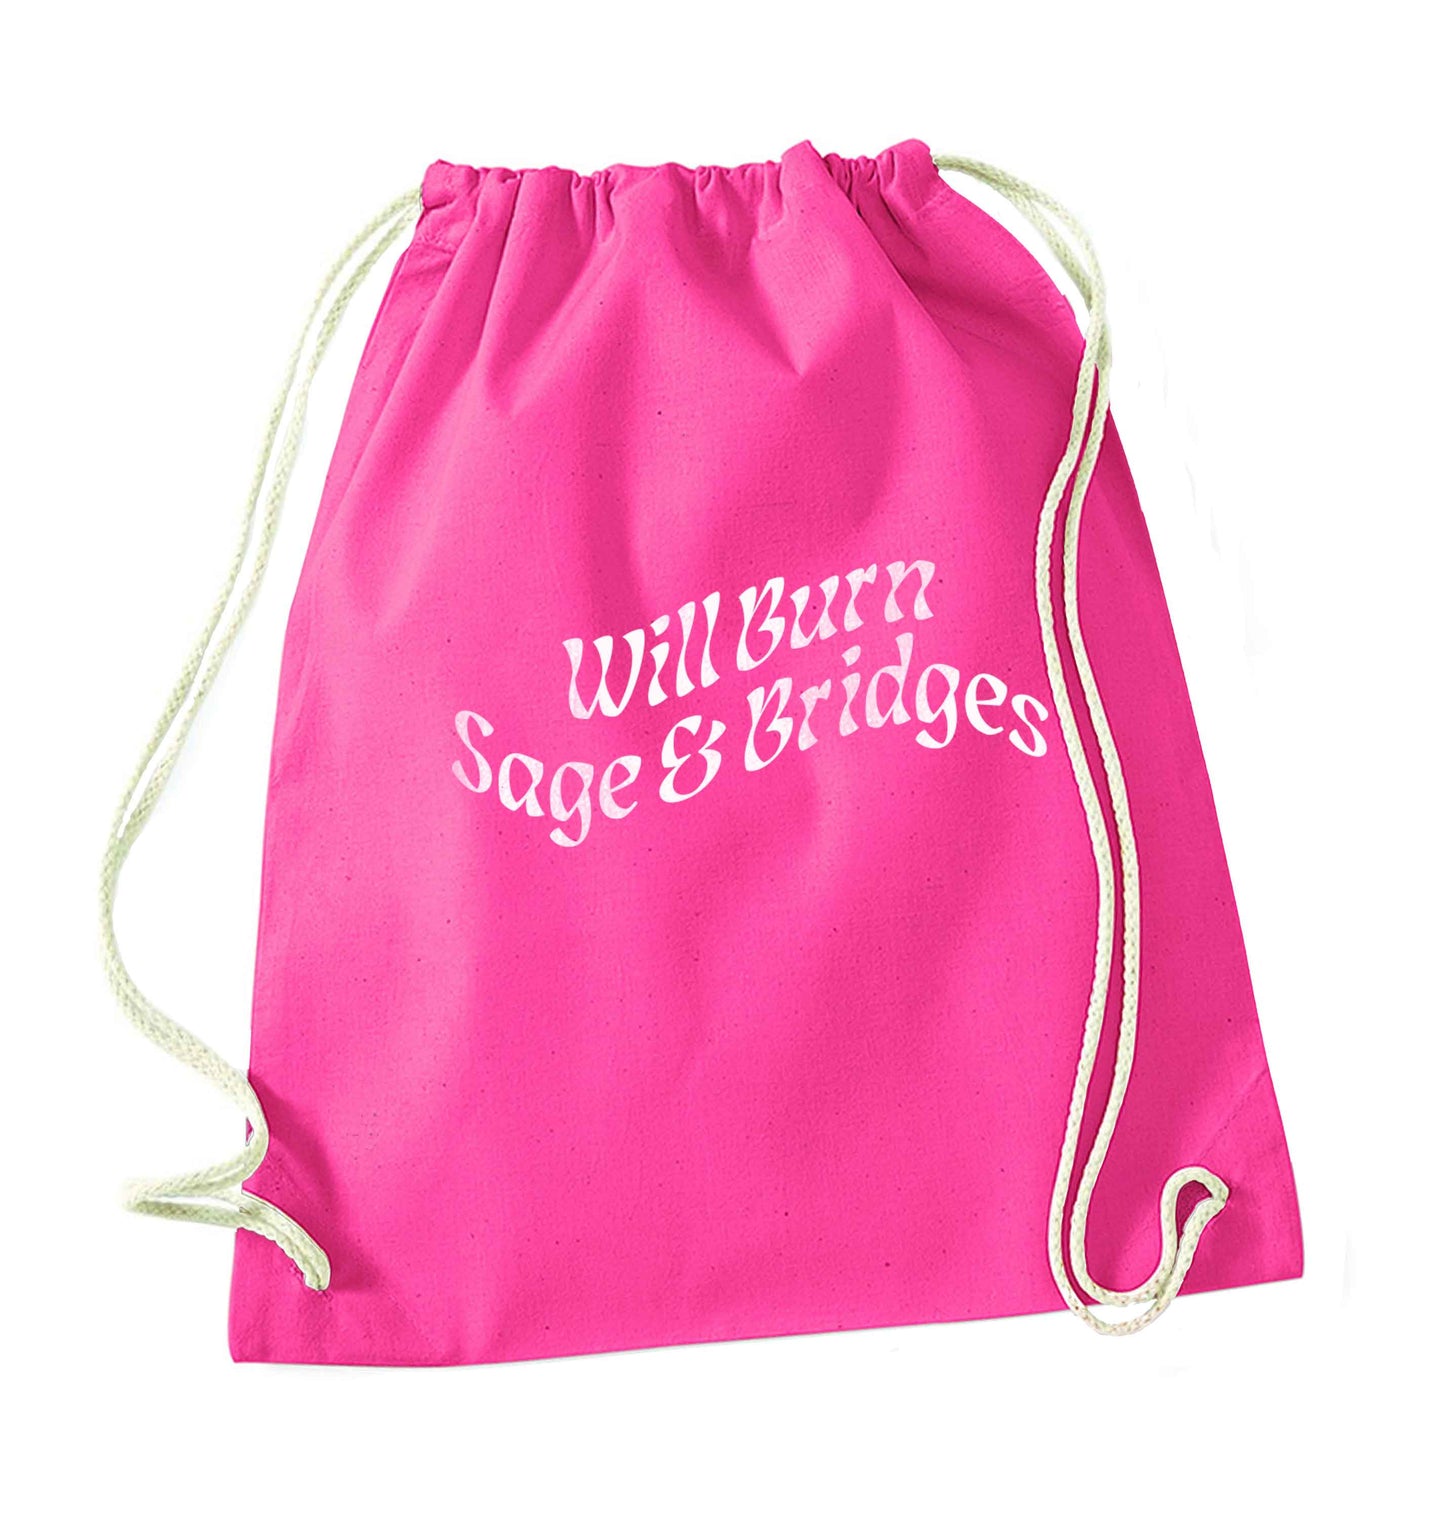 Will burn bridges and sage pink drawstring bag